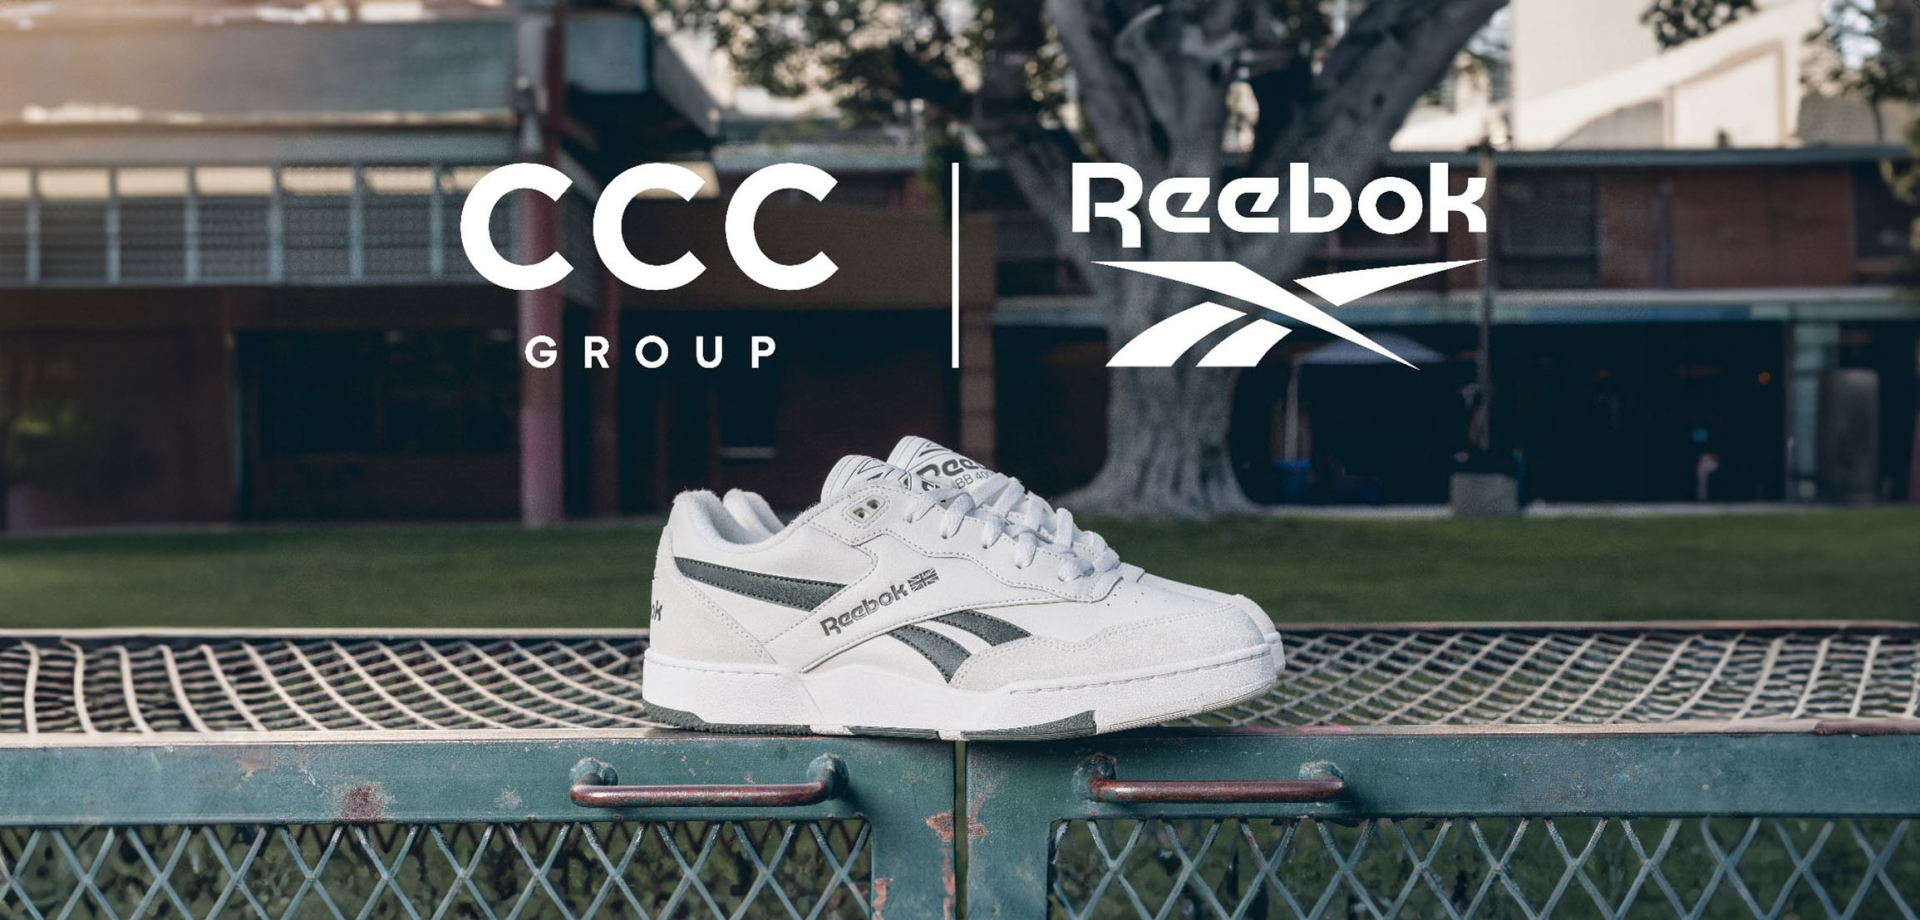 Grupa CCC i Authentic podpisały europejski kontrakt  dot. marki Reebok